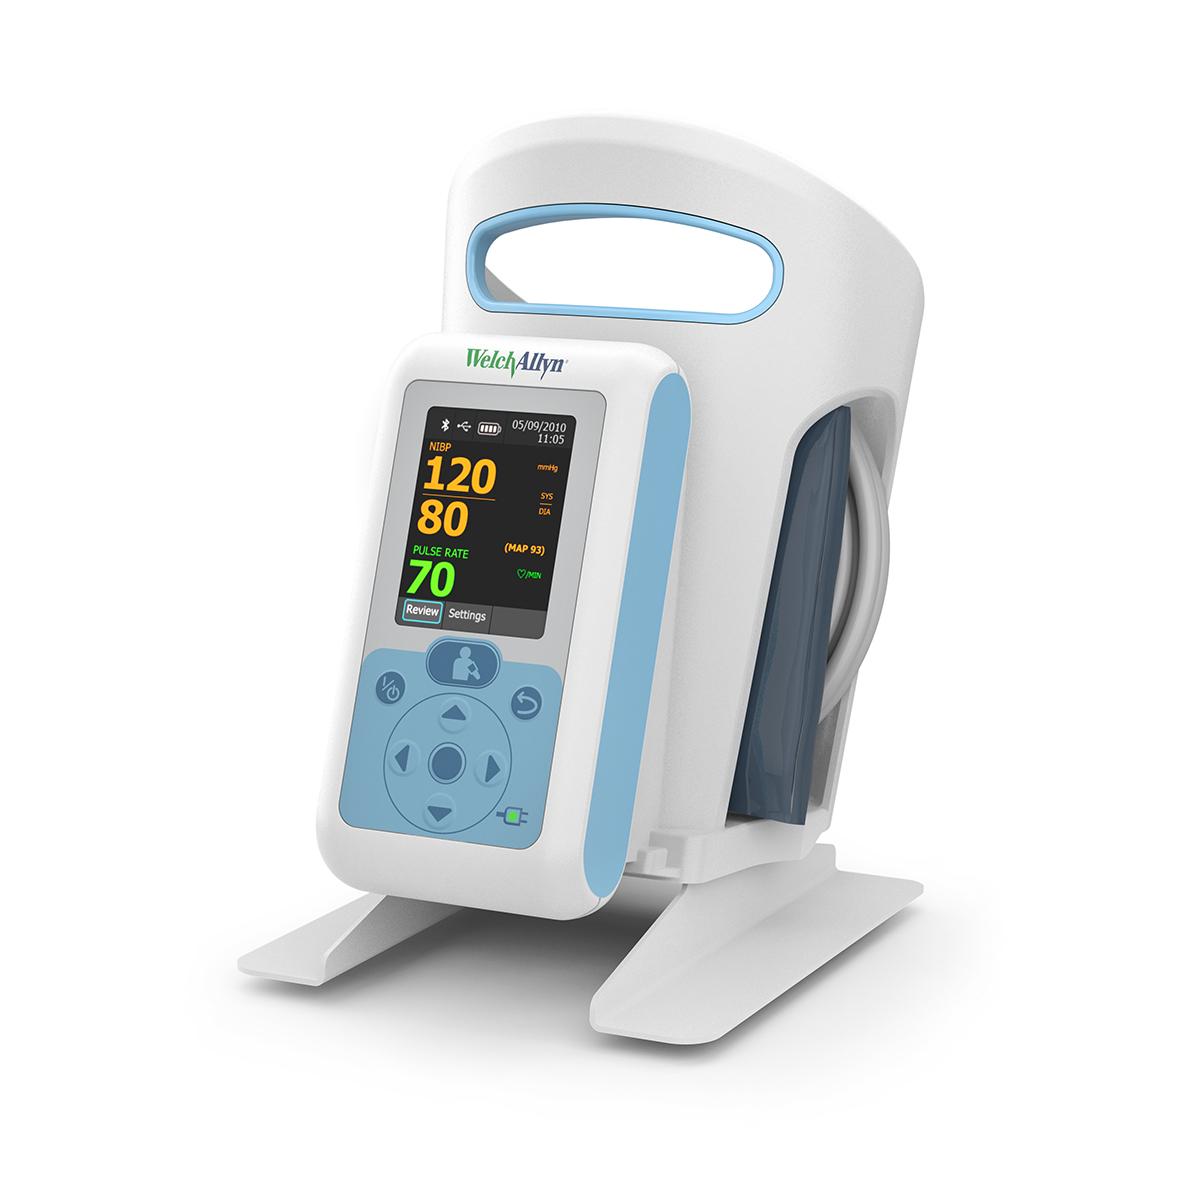 Connex® ProBP™ 3400 digital blodtrycksenhet, 3/4-vy från höger sida av produkten med bordsmonteringsadapter med korg